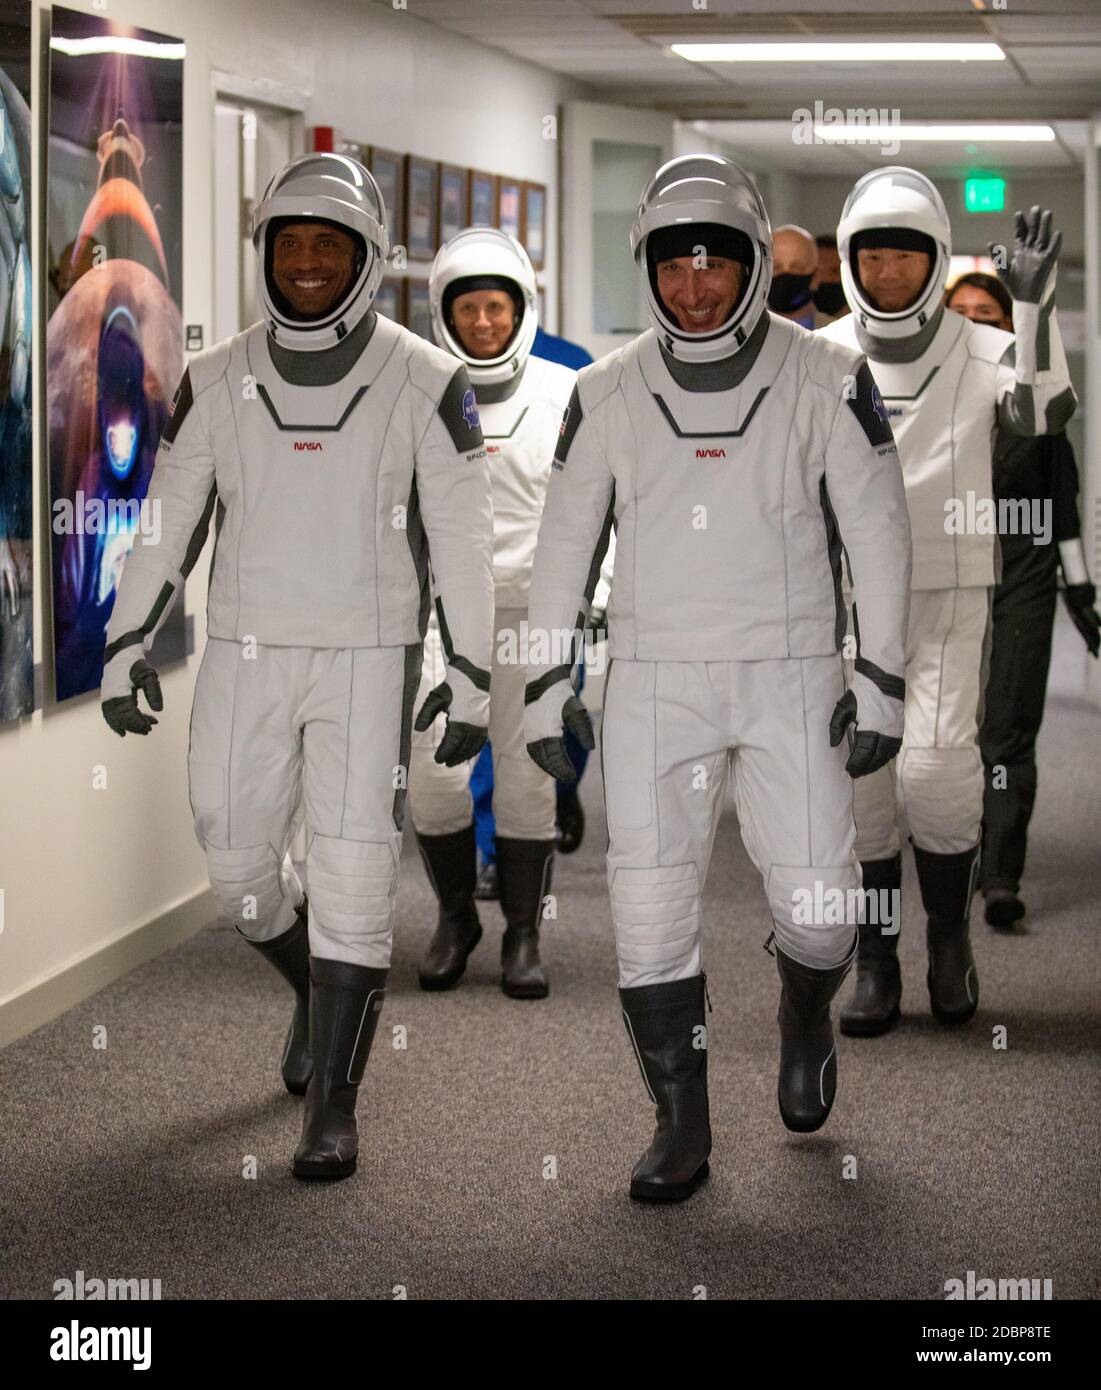 L'équipe commerciale SpaceX de la NASA un astronaute descend le couloir du  bâtiment Neil Armstrong Operations and Checkout au Kennedy Space Center le  15 novembre 2020 à Cape Canaveral, en Floride. De